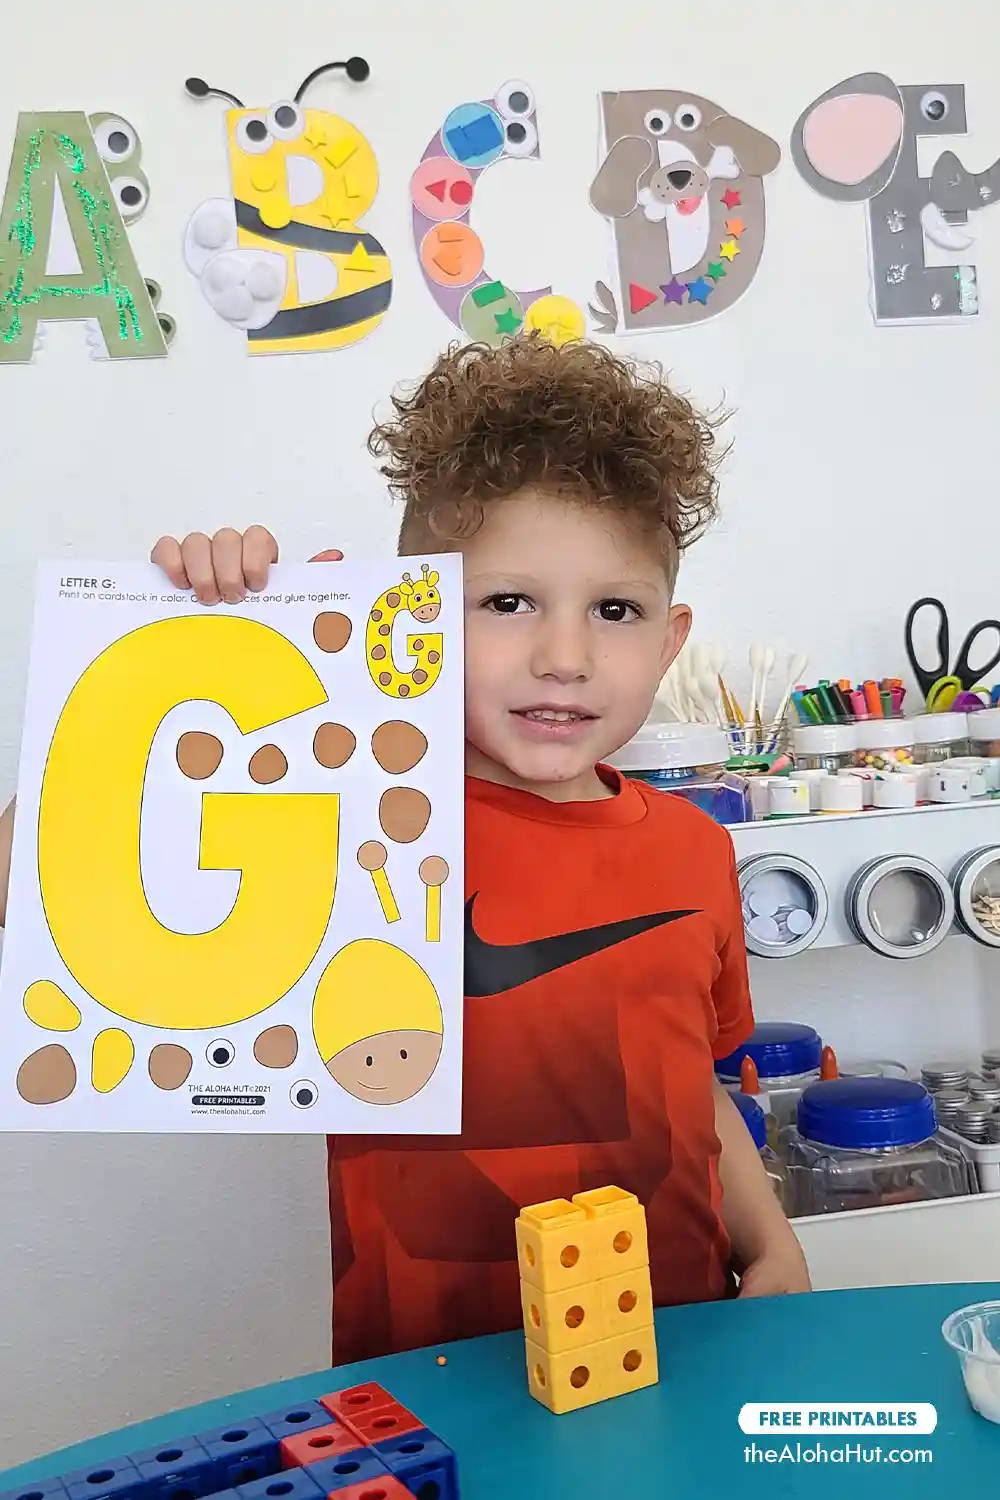 Alphabet Letter Crafts - Letter G - free printable